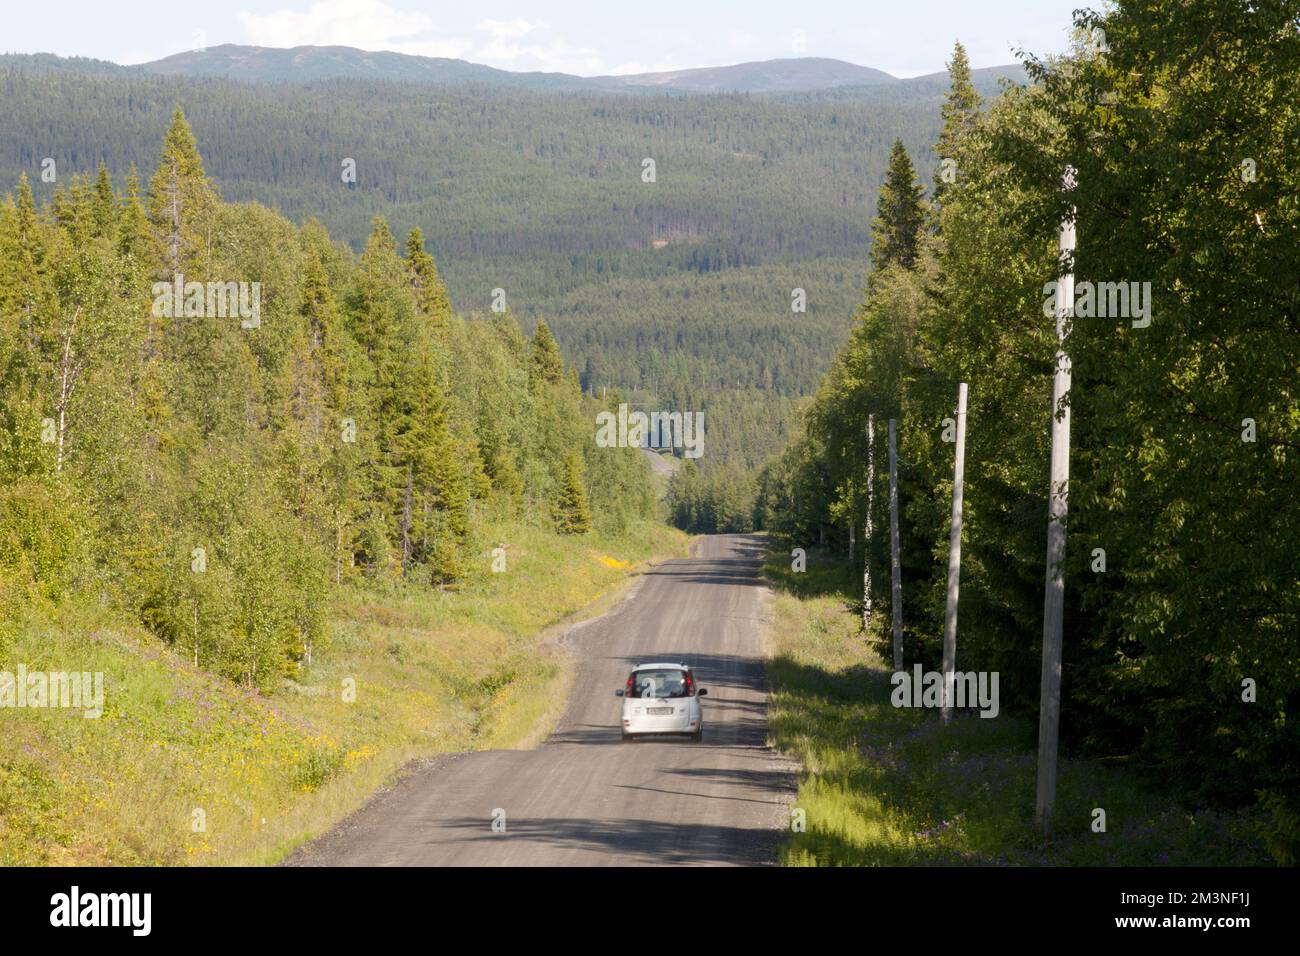 RURAL COUNTY, SVEZIA IL 01 LUGLIO 2014. Guarda la foresta, la strada e il veicolo lontano dai luoghi urbani. Uso editoriale. Foto Stock